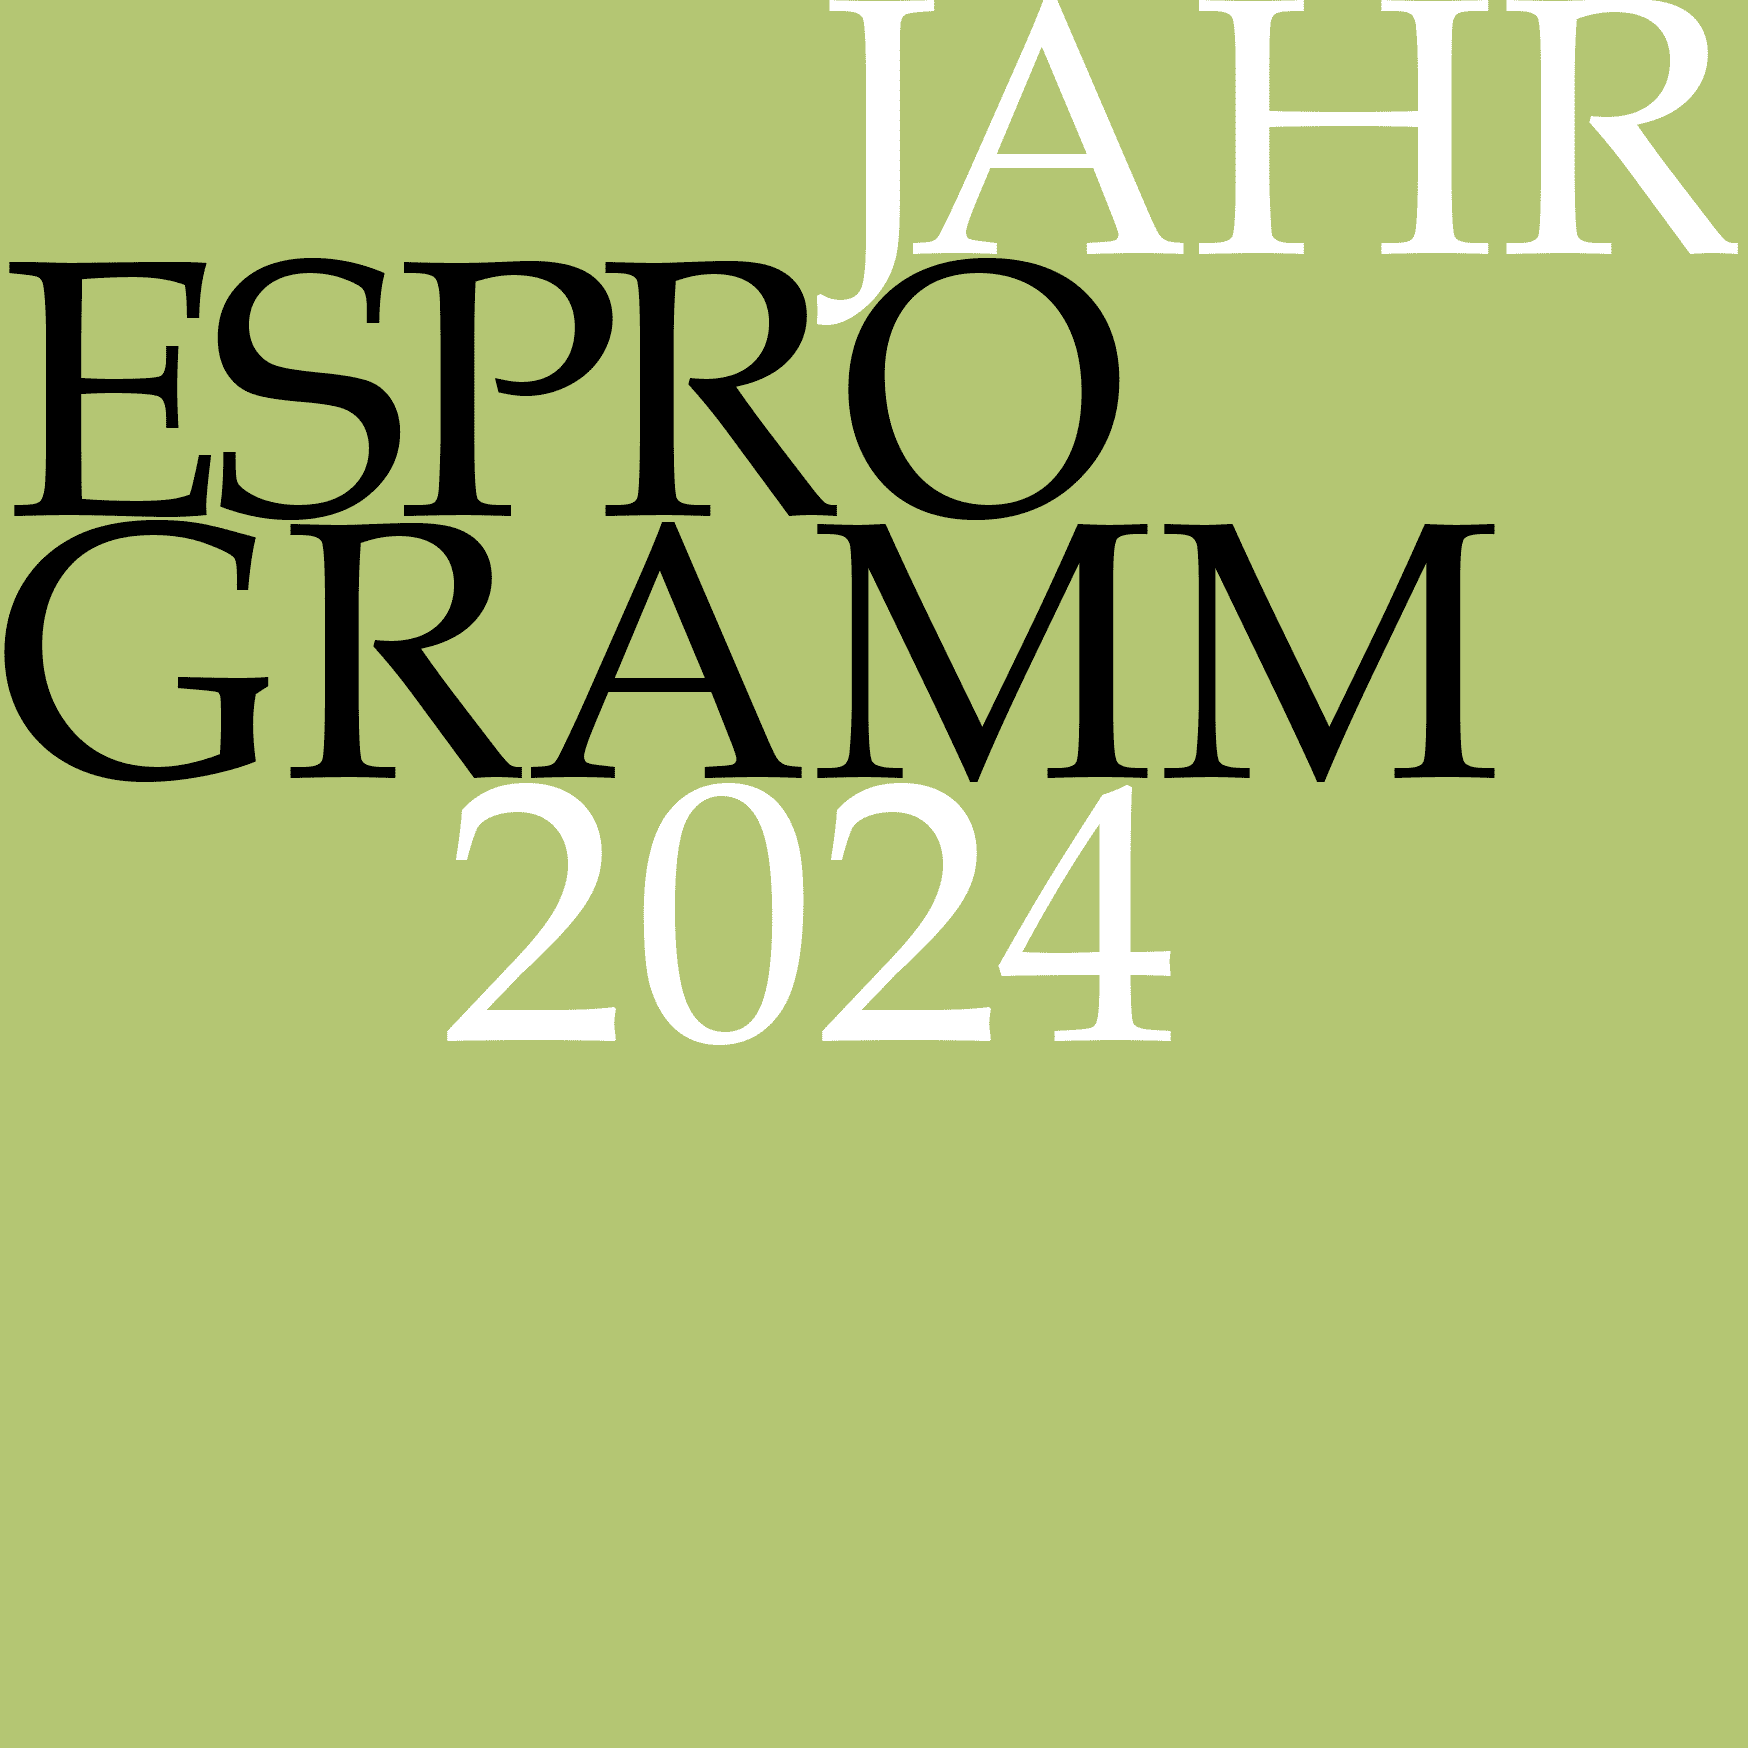 Jahresprogramm 2024